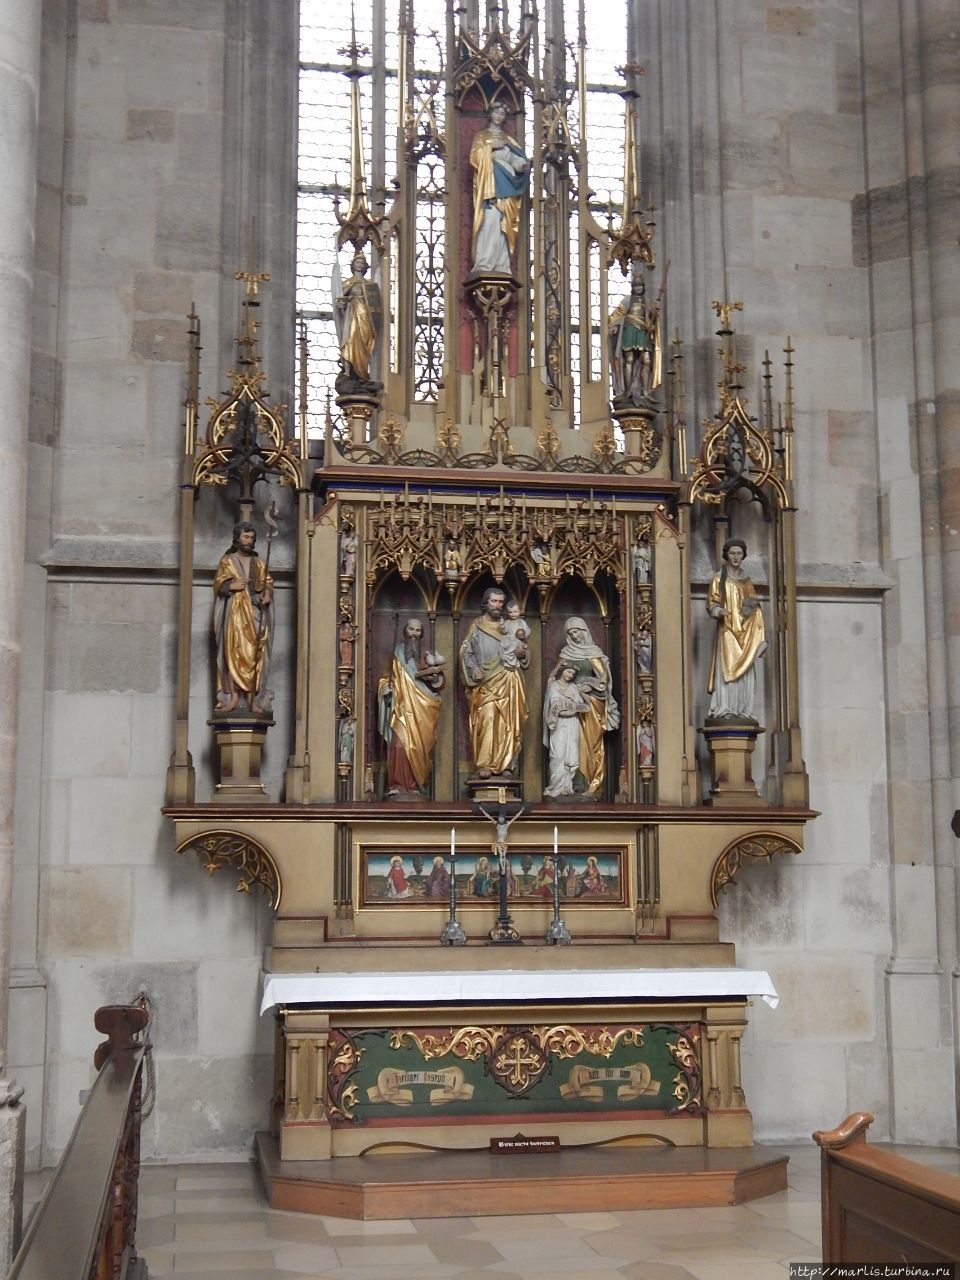 Josephsaltar, 1480. Алтарь Иосифа и Св. Анны, 1480. Некоторые фигуры сделаны в 19-м веке. Динкельсбюль, Германия